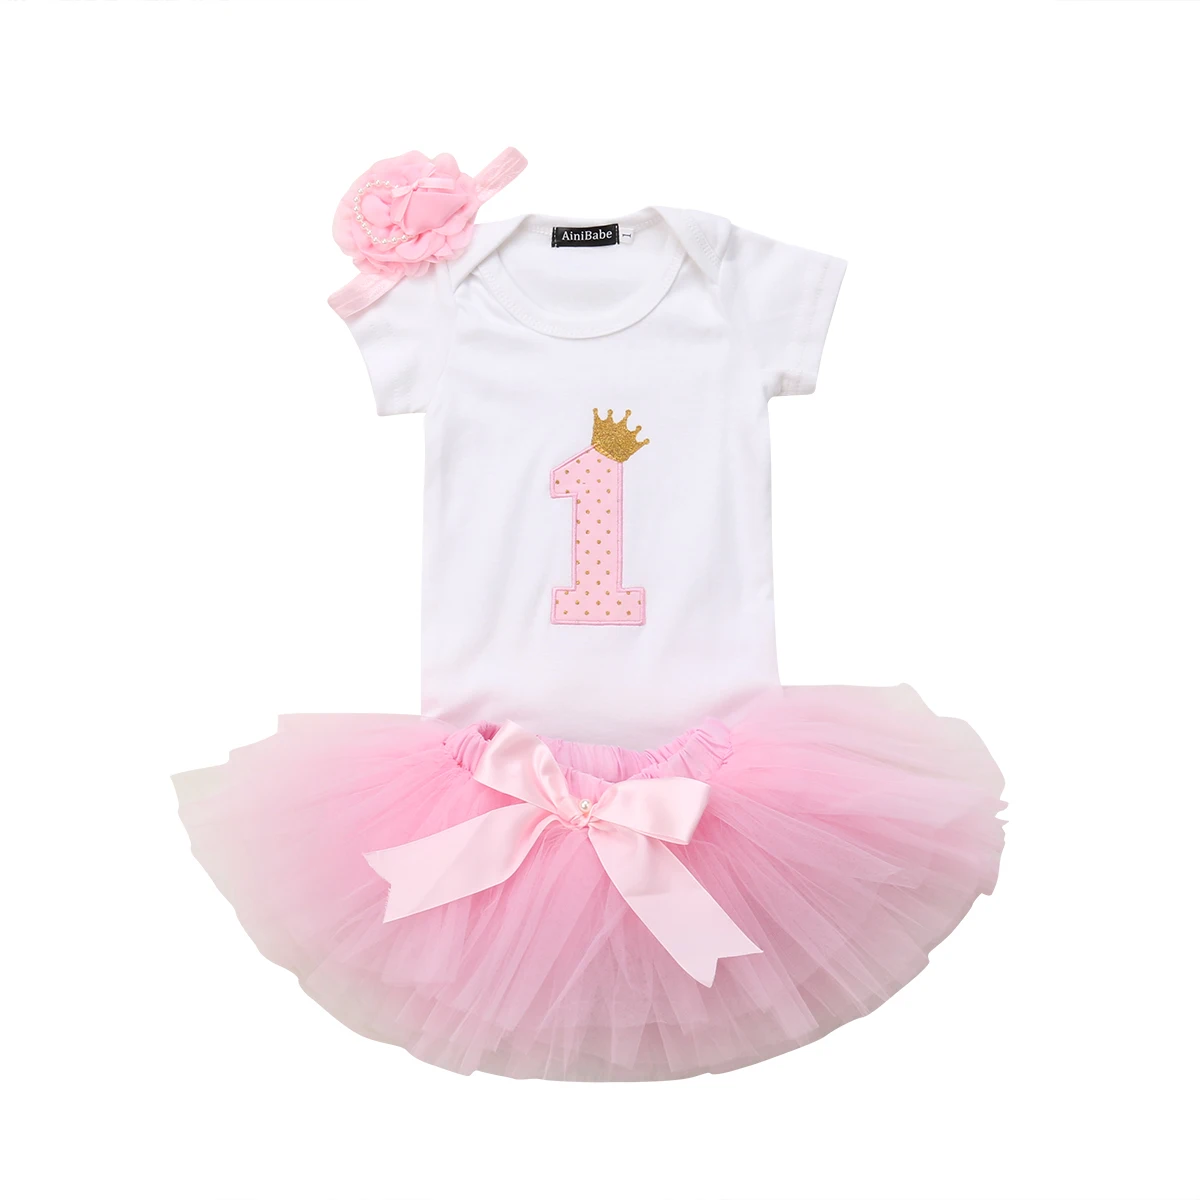 Новые брендовые комплекты одежды принцессы для новорожденных девочек на день рождения 1-1 года, белый комбинезон с надписью, топы+ кружевные юбки-пачки+ повязка на голову, От 0 до 1 года - Цвет: Розовый